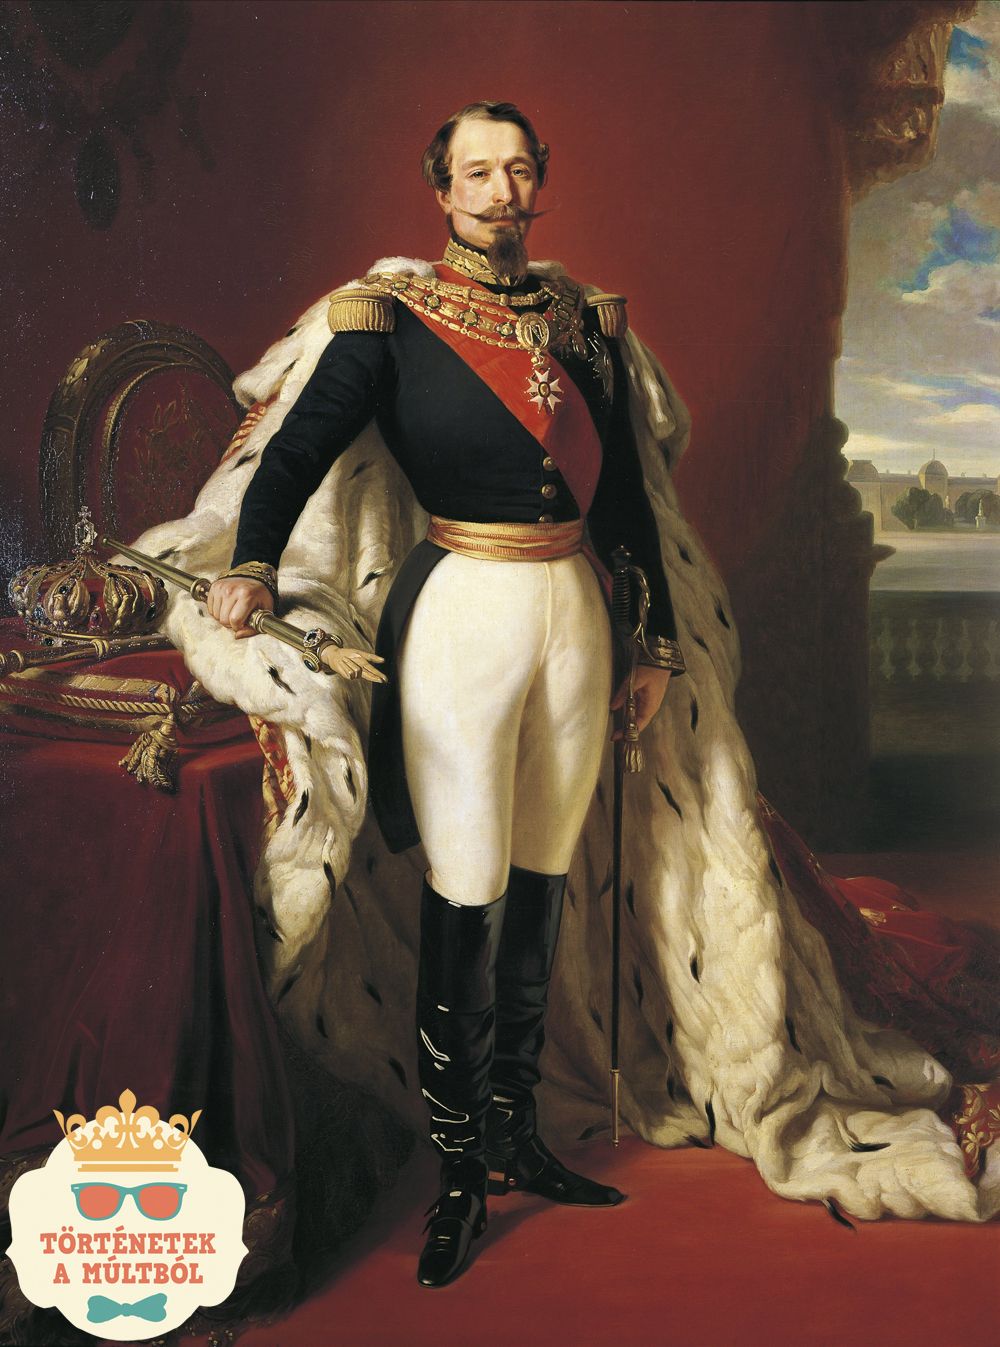 Szerelem csatározások közepette – Eugénia császárné és III. Napóleon különös házassága